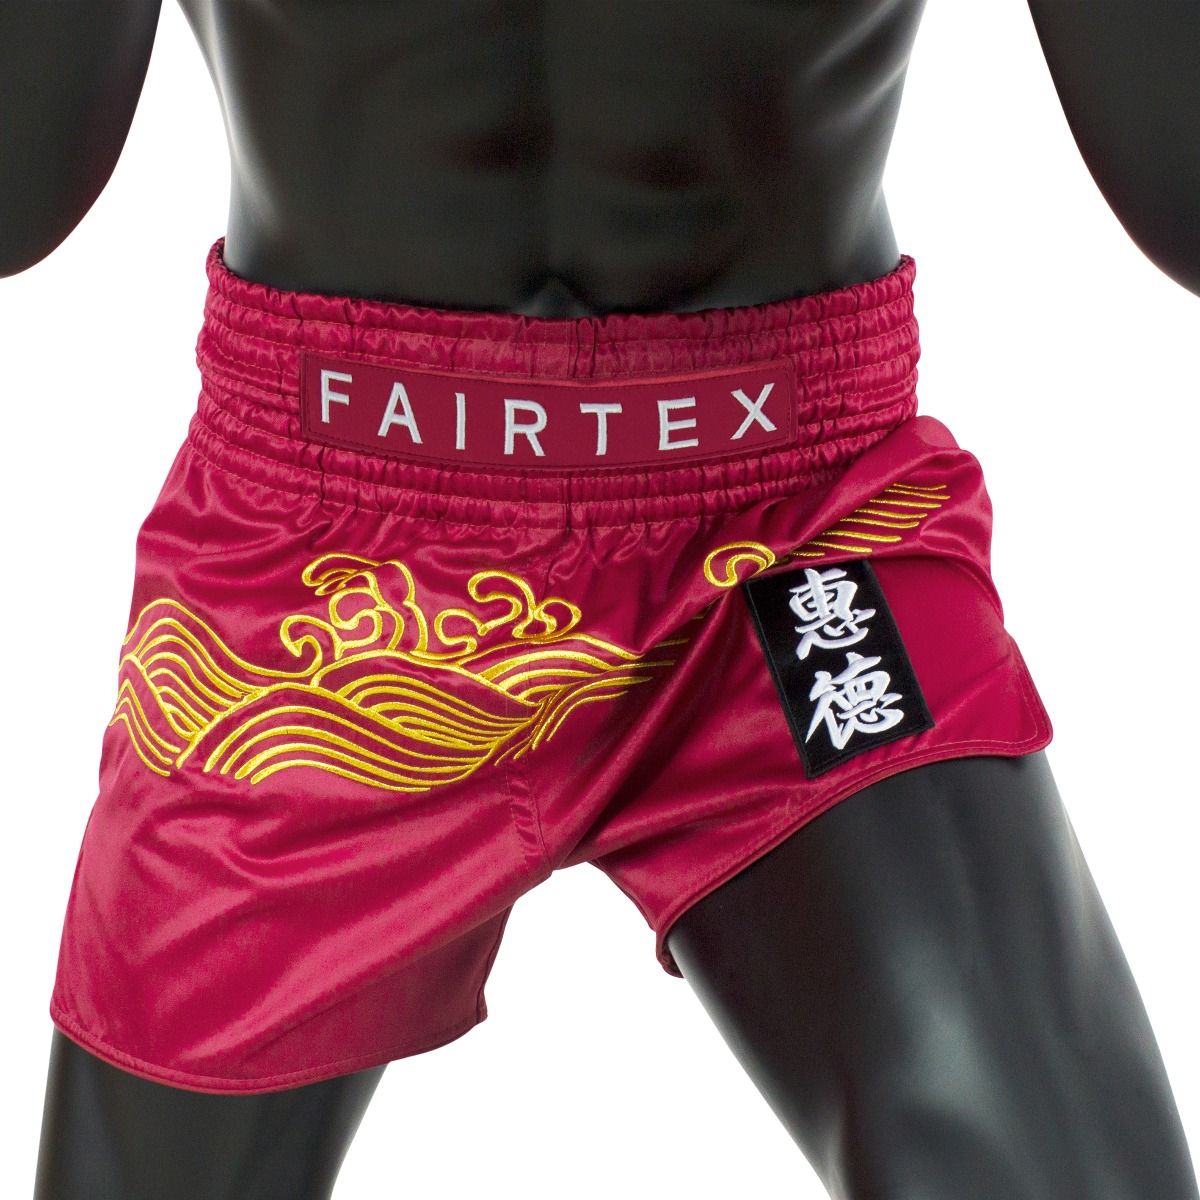 Quần short Fairtex Muaythai/Kickboxing - BS1910 - Hàng chính hãng, nhiều size